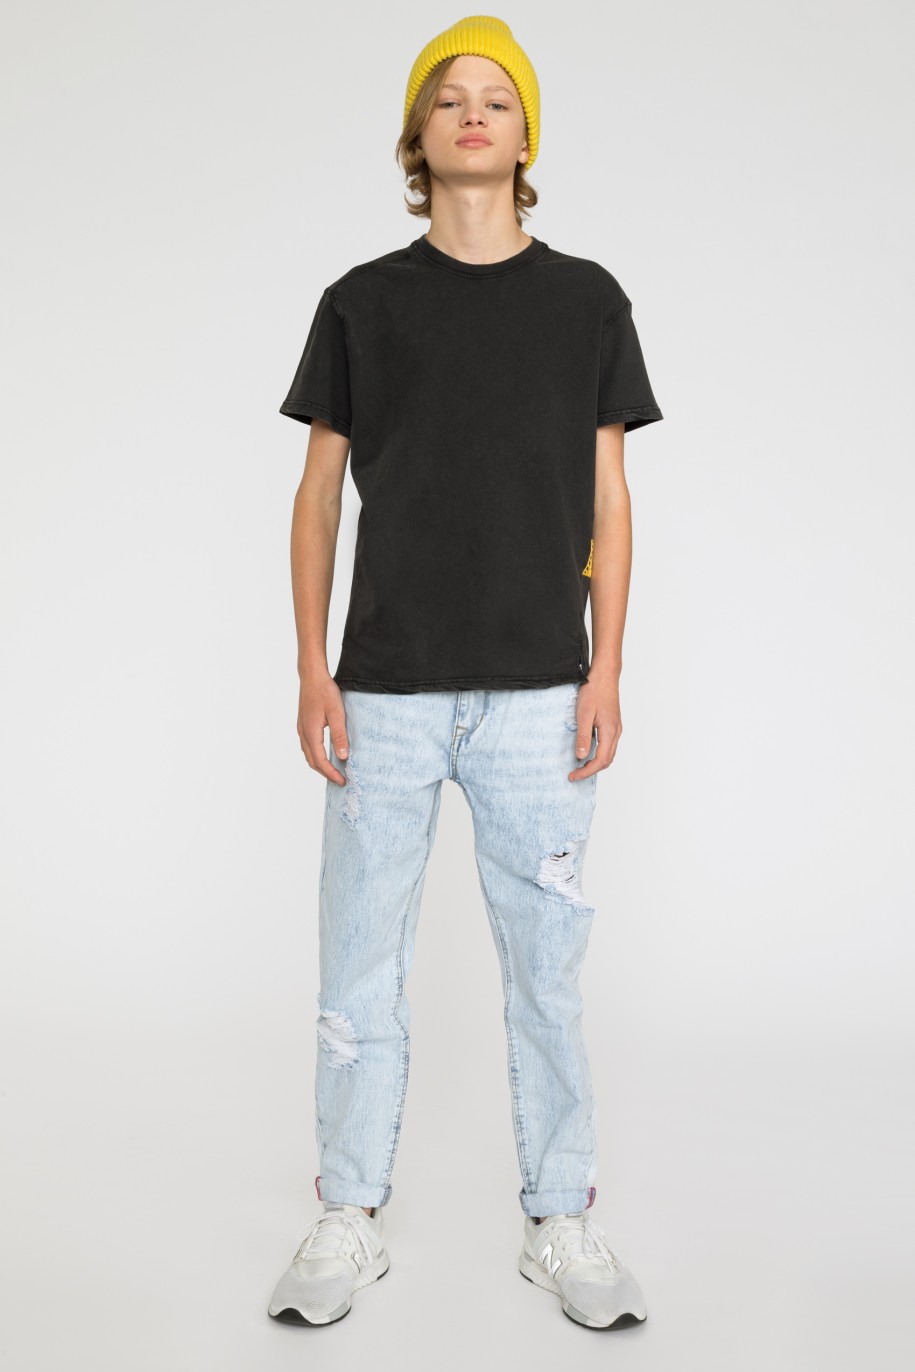 Jasne jeansowe spodnie dla chłopaka z przetarciami - 33189